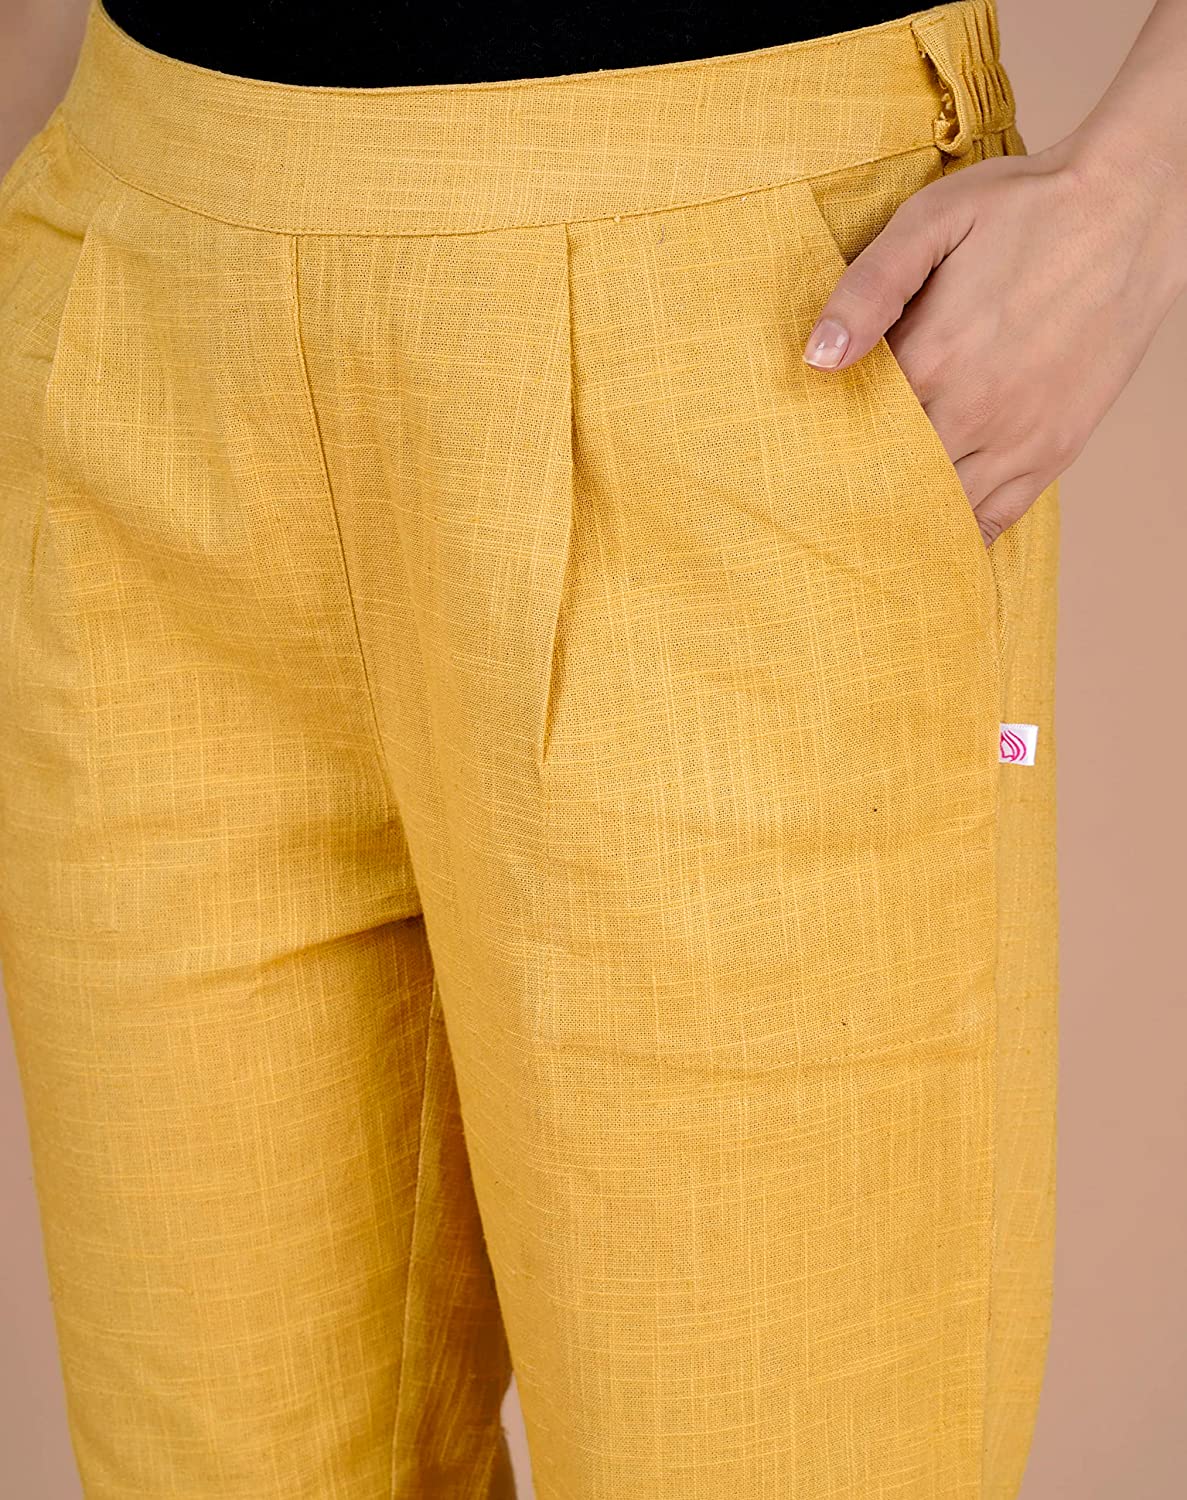 Flex Waist Trouser in Performance Cotton | Women's Pants | Argent